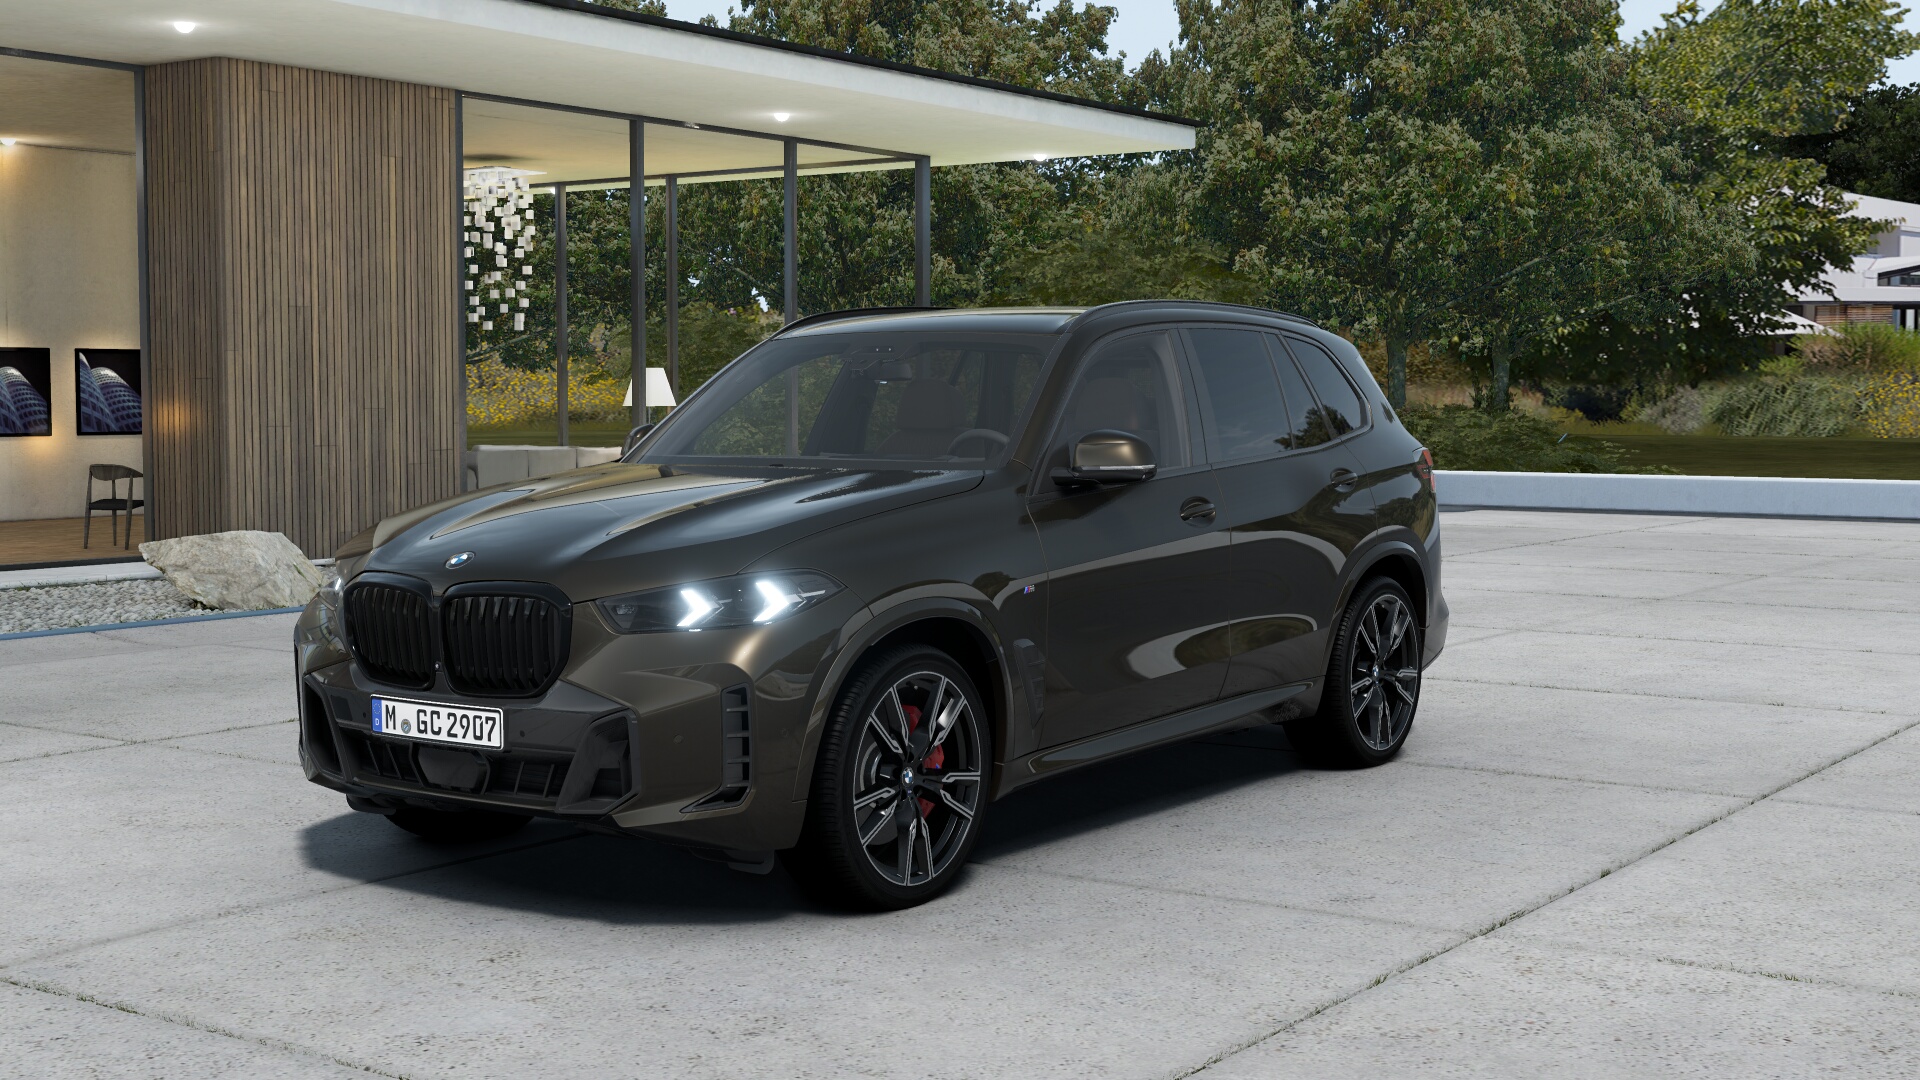 BMW X5 40d xDrive Msport | nové auto objednané do výroby | FACELIFT | sportovně luxusní naftové SUV | maximální výbava | skvělá cena | skladem a ihned k předání | objednání online | auto eshop AUTOiBUY.com